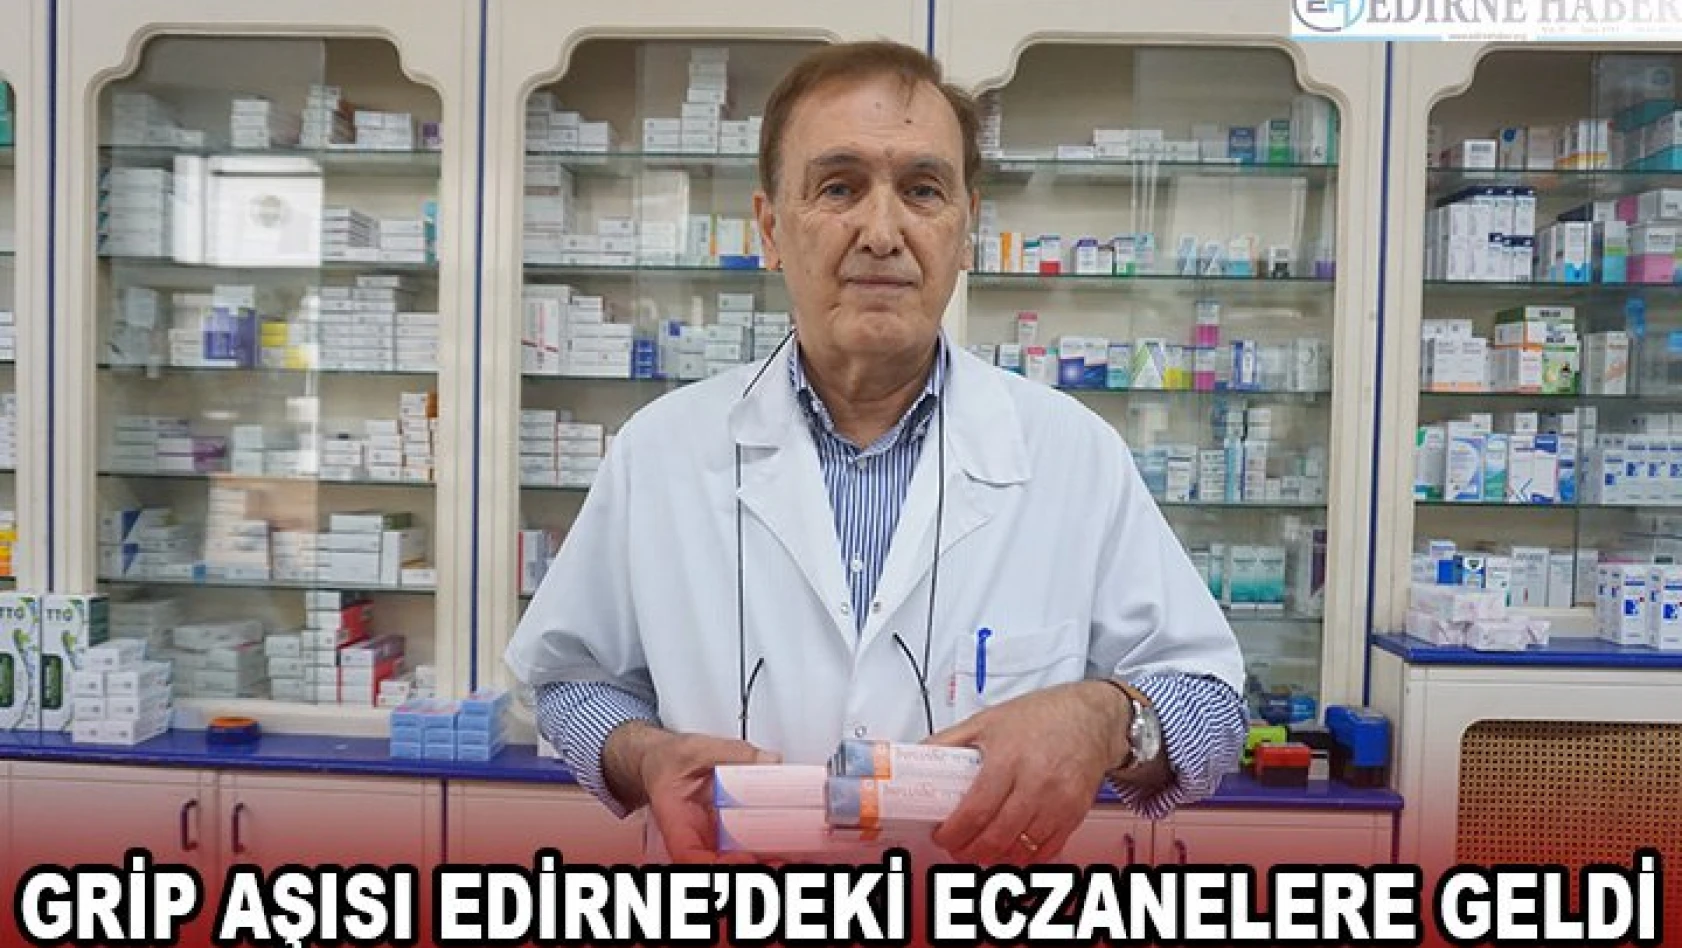 Grip aşısı Edirne'deki eczanelere geldi